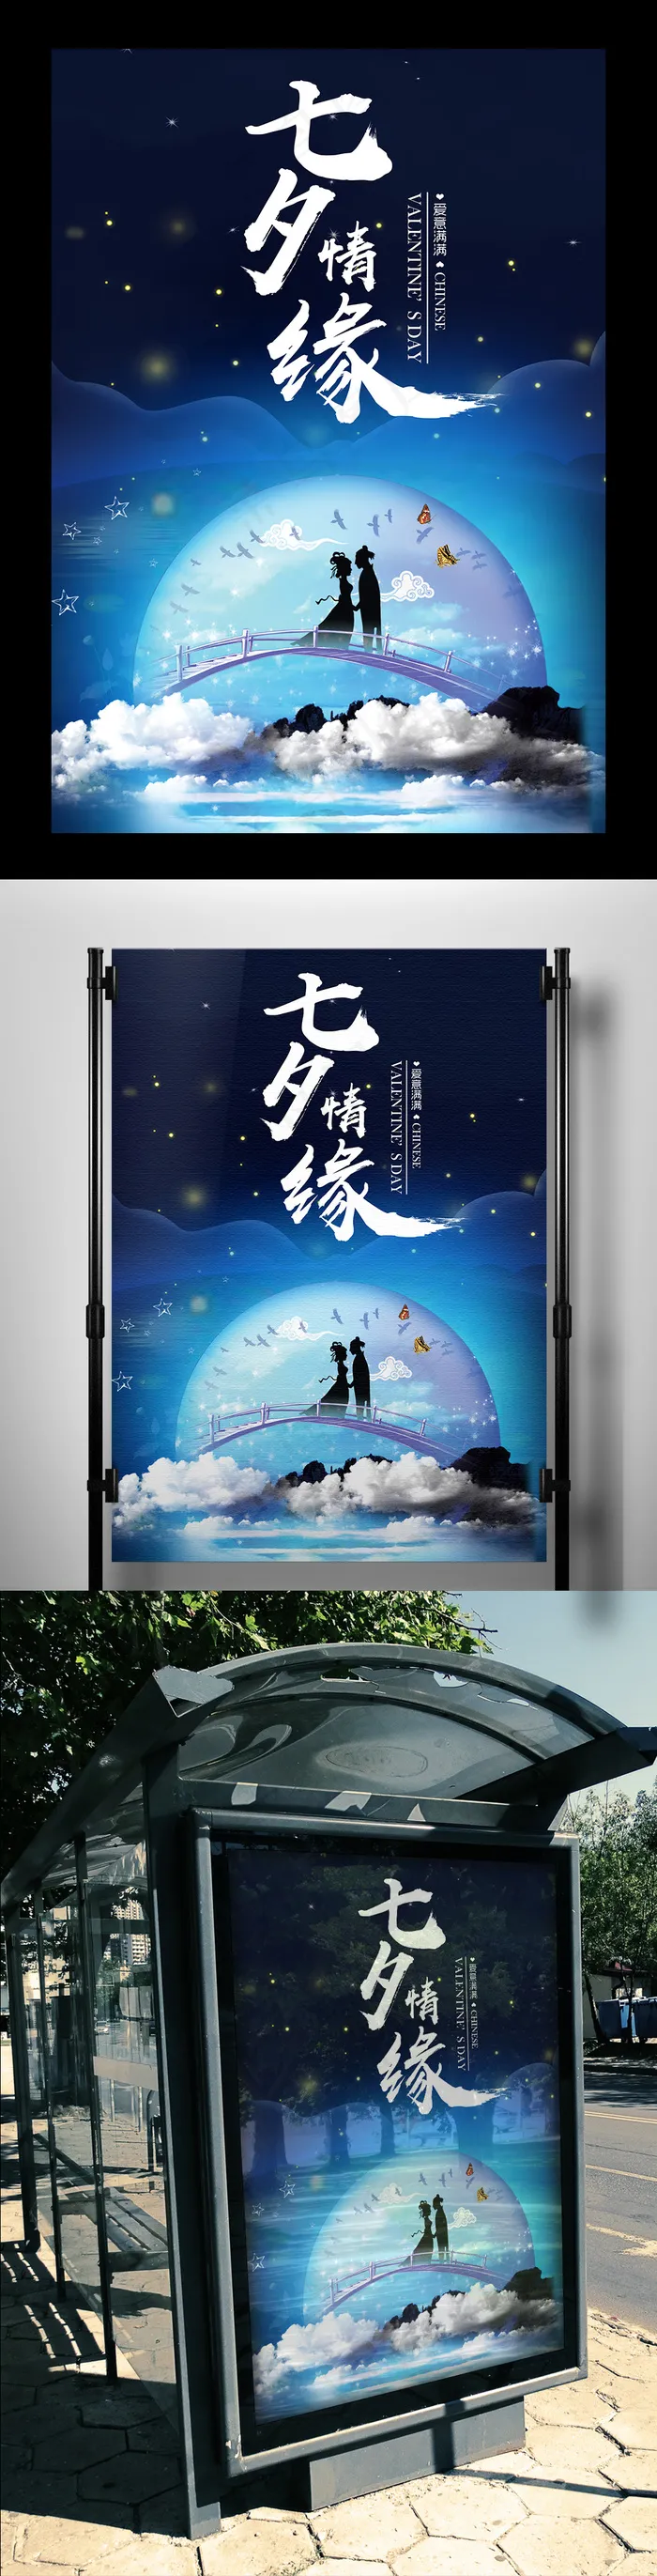 2017中国情人节七夕情缘海报设计